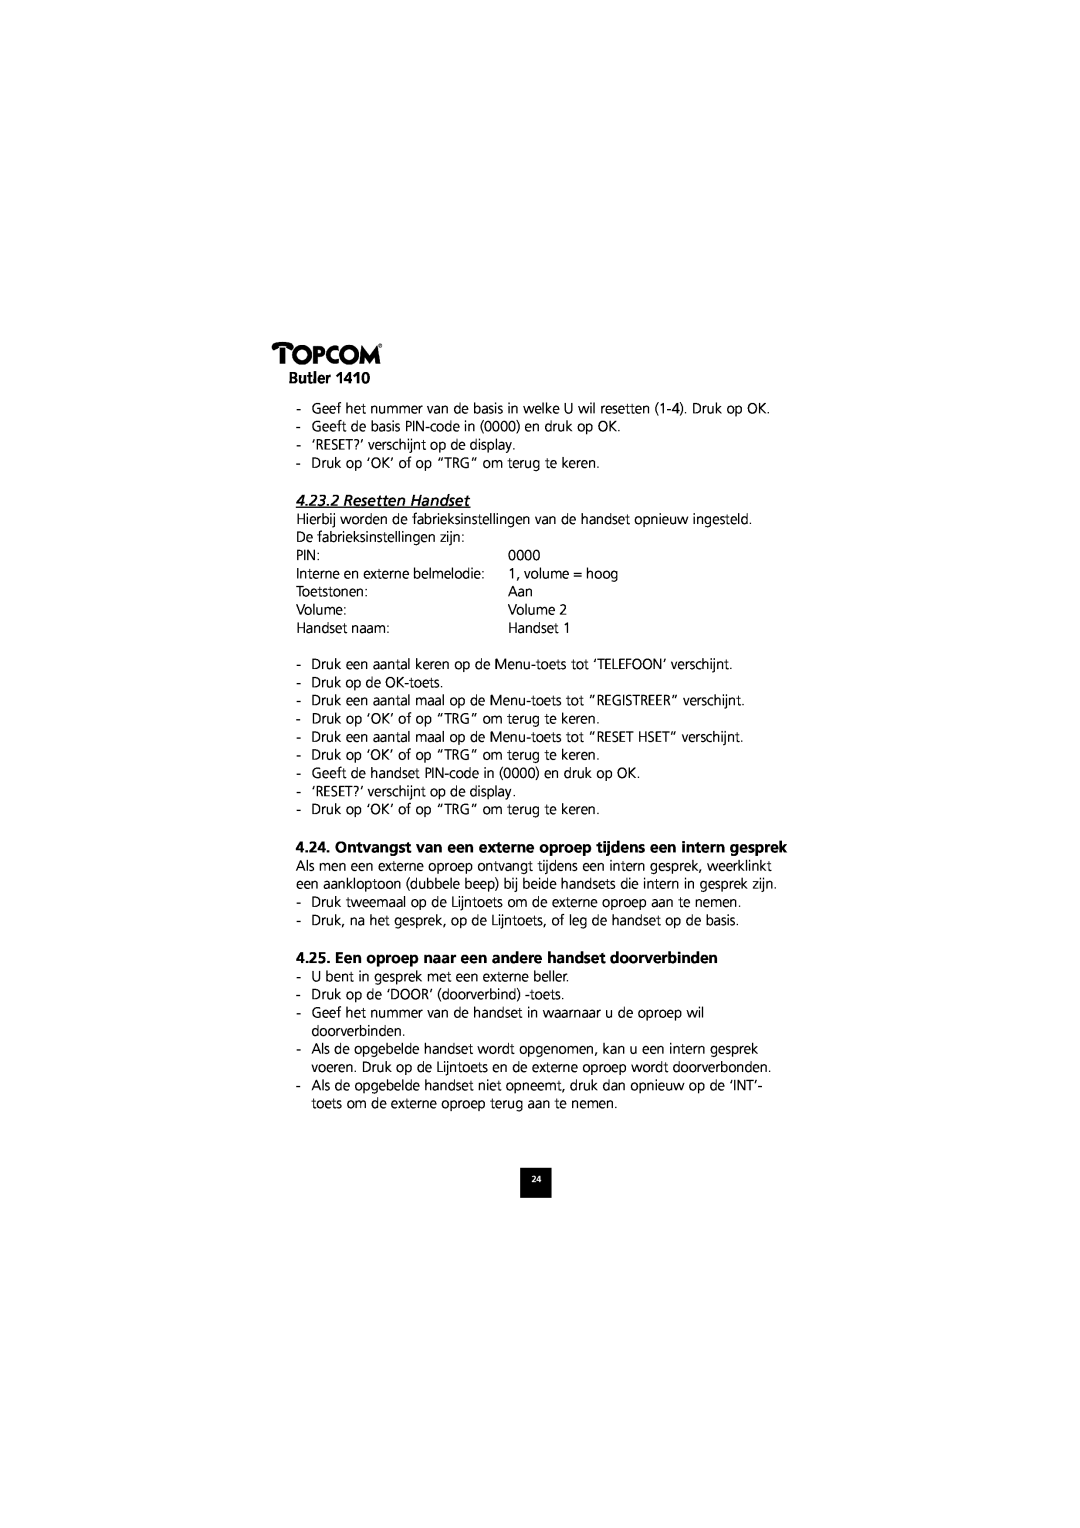 Topcom 1410 manual Resetten Handset, Een oproep naar een andere handset doorverbinden, Butler 